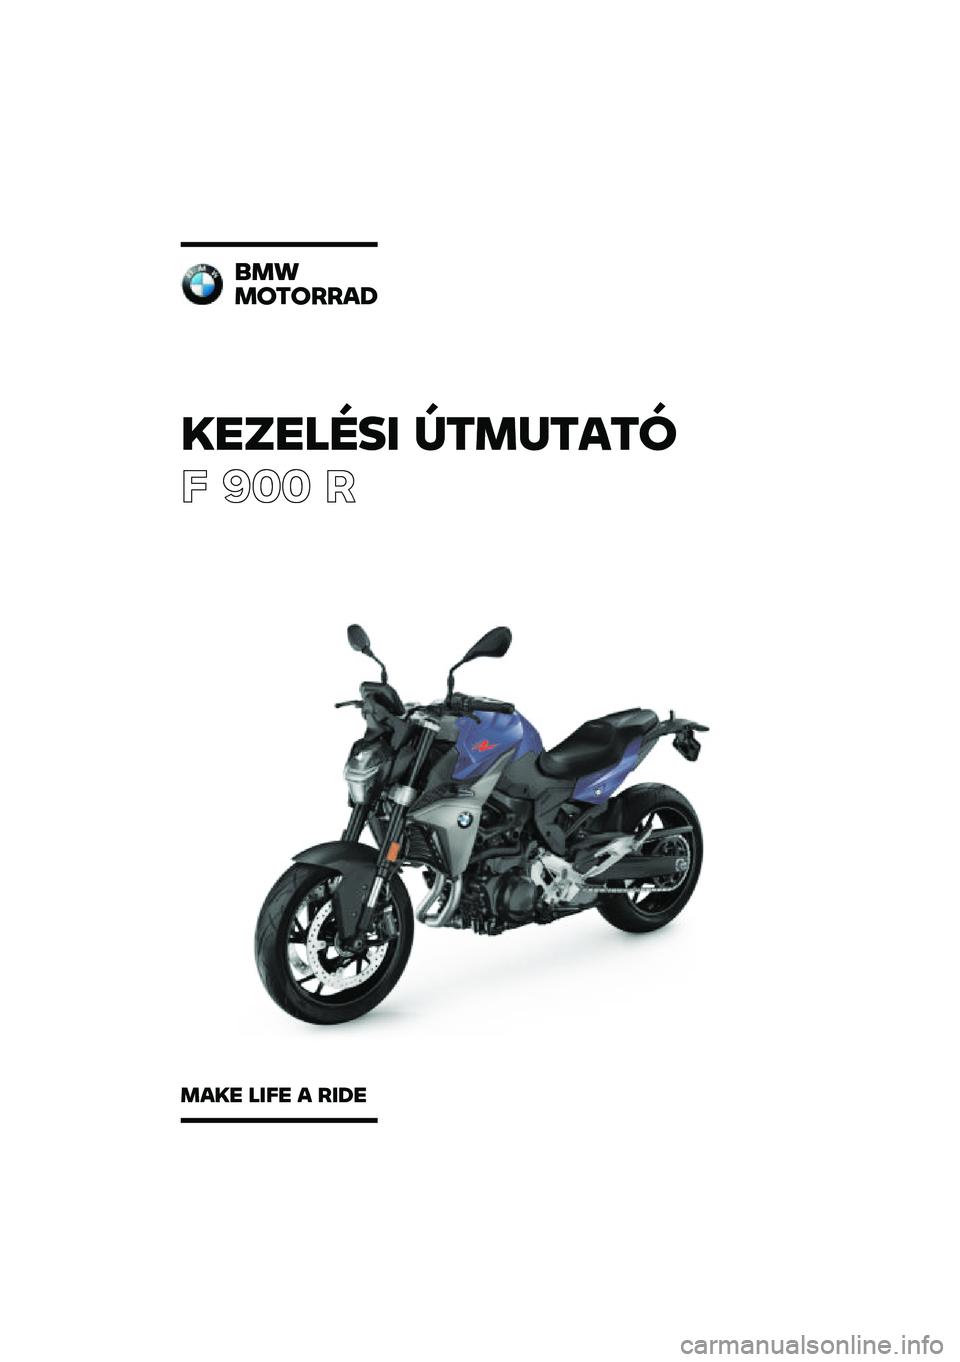 BMW MOTORRAD F 900 R 2020  Kezelési útmutató (in Hungarian) �������\b�	 �
�\f�
��\f��\f�
� ��� �
��
�
�
��\f�����
�
��� ��	�� � ��	�� 